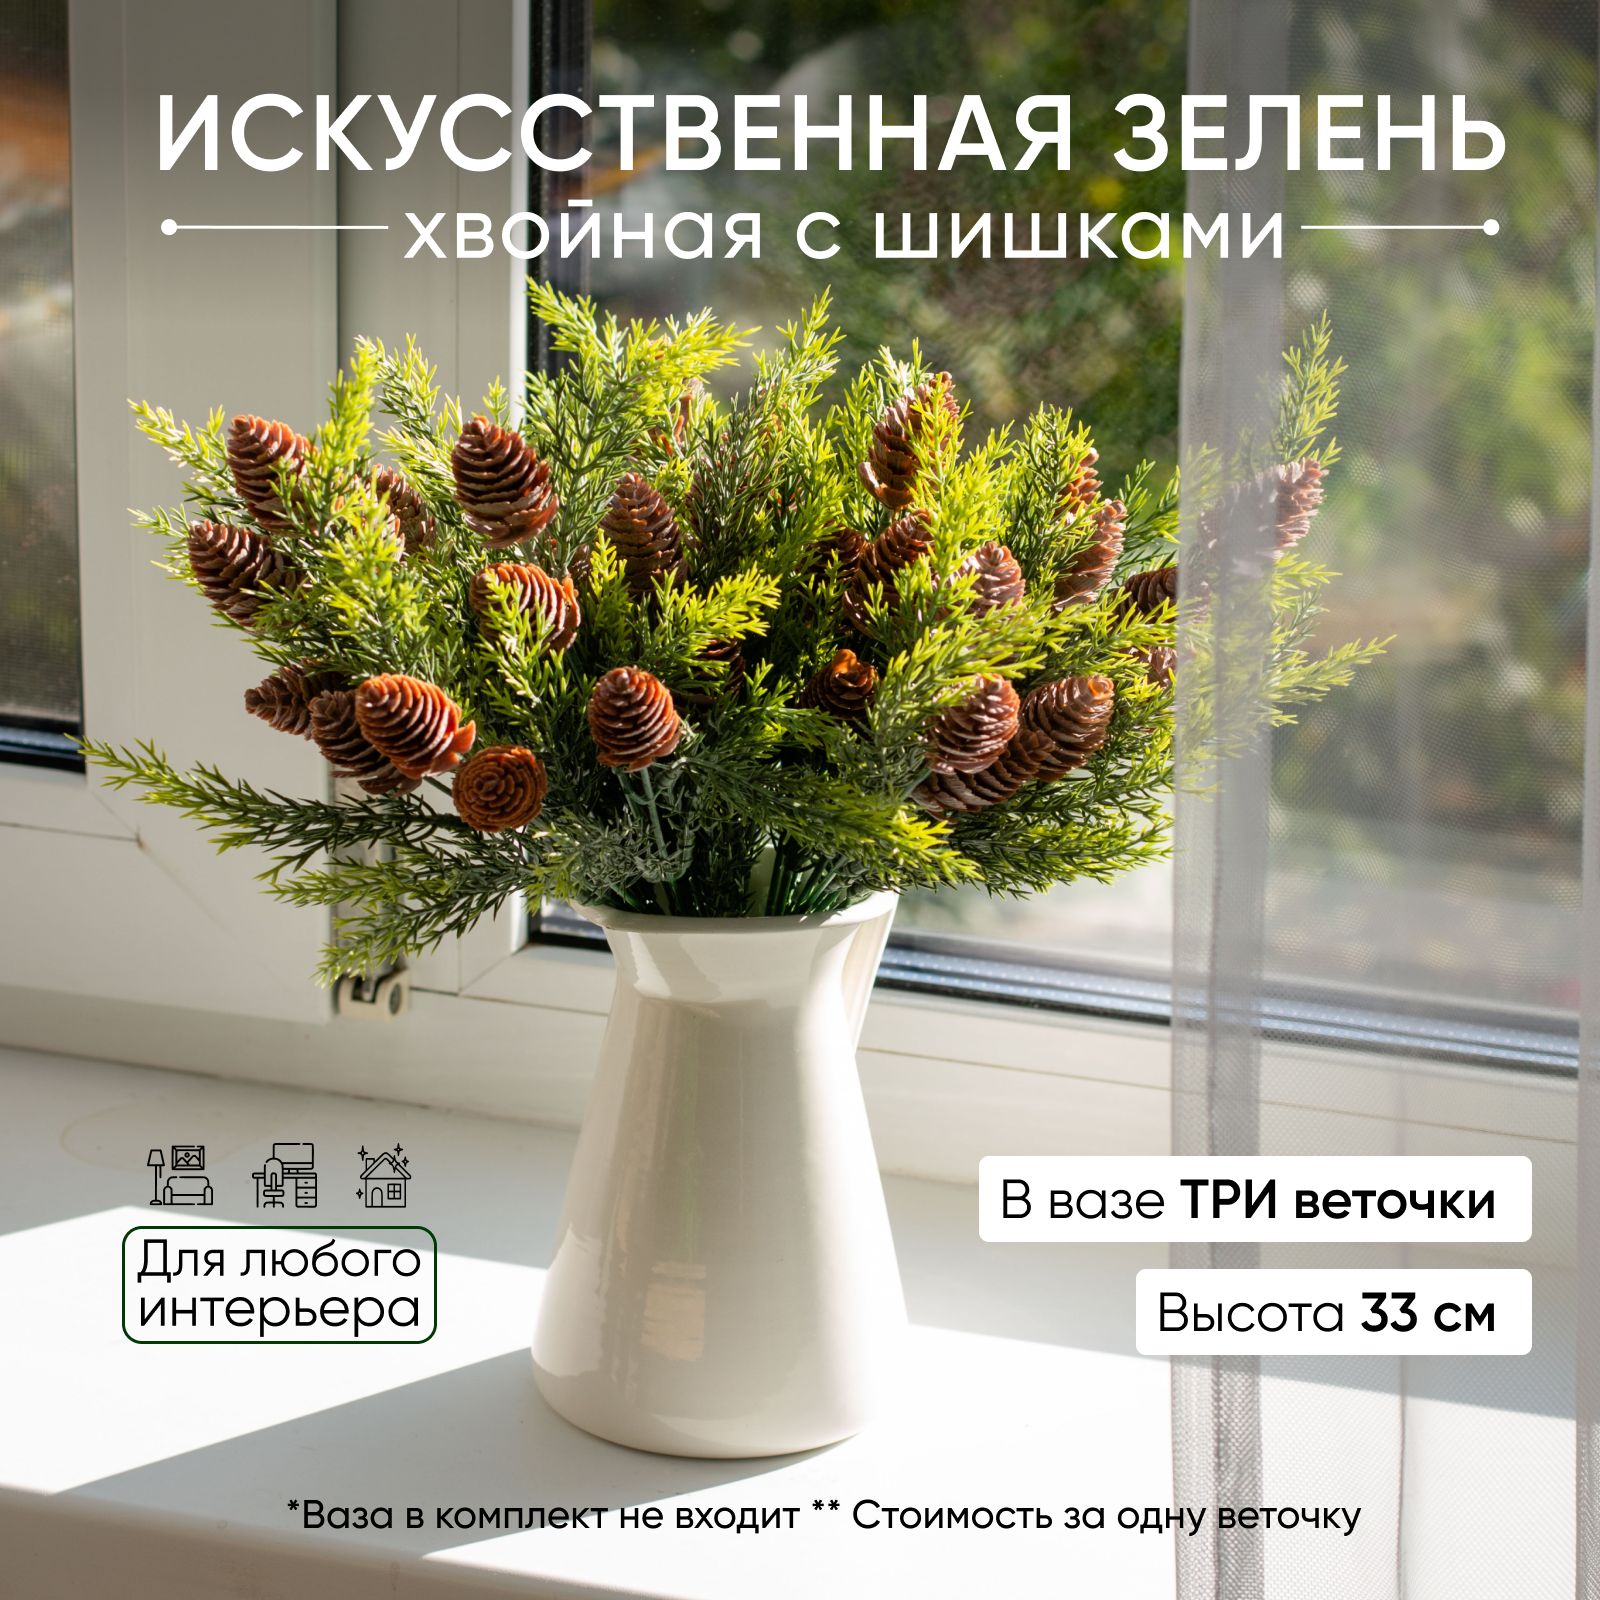 Купить ёлки и подставки в Томске | hb-crm.ru